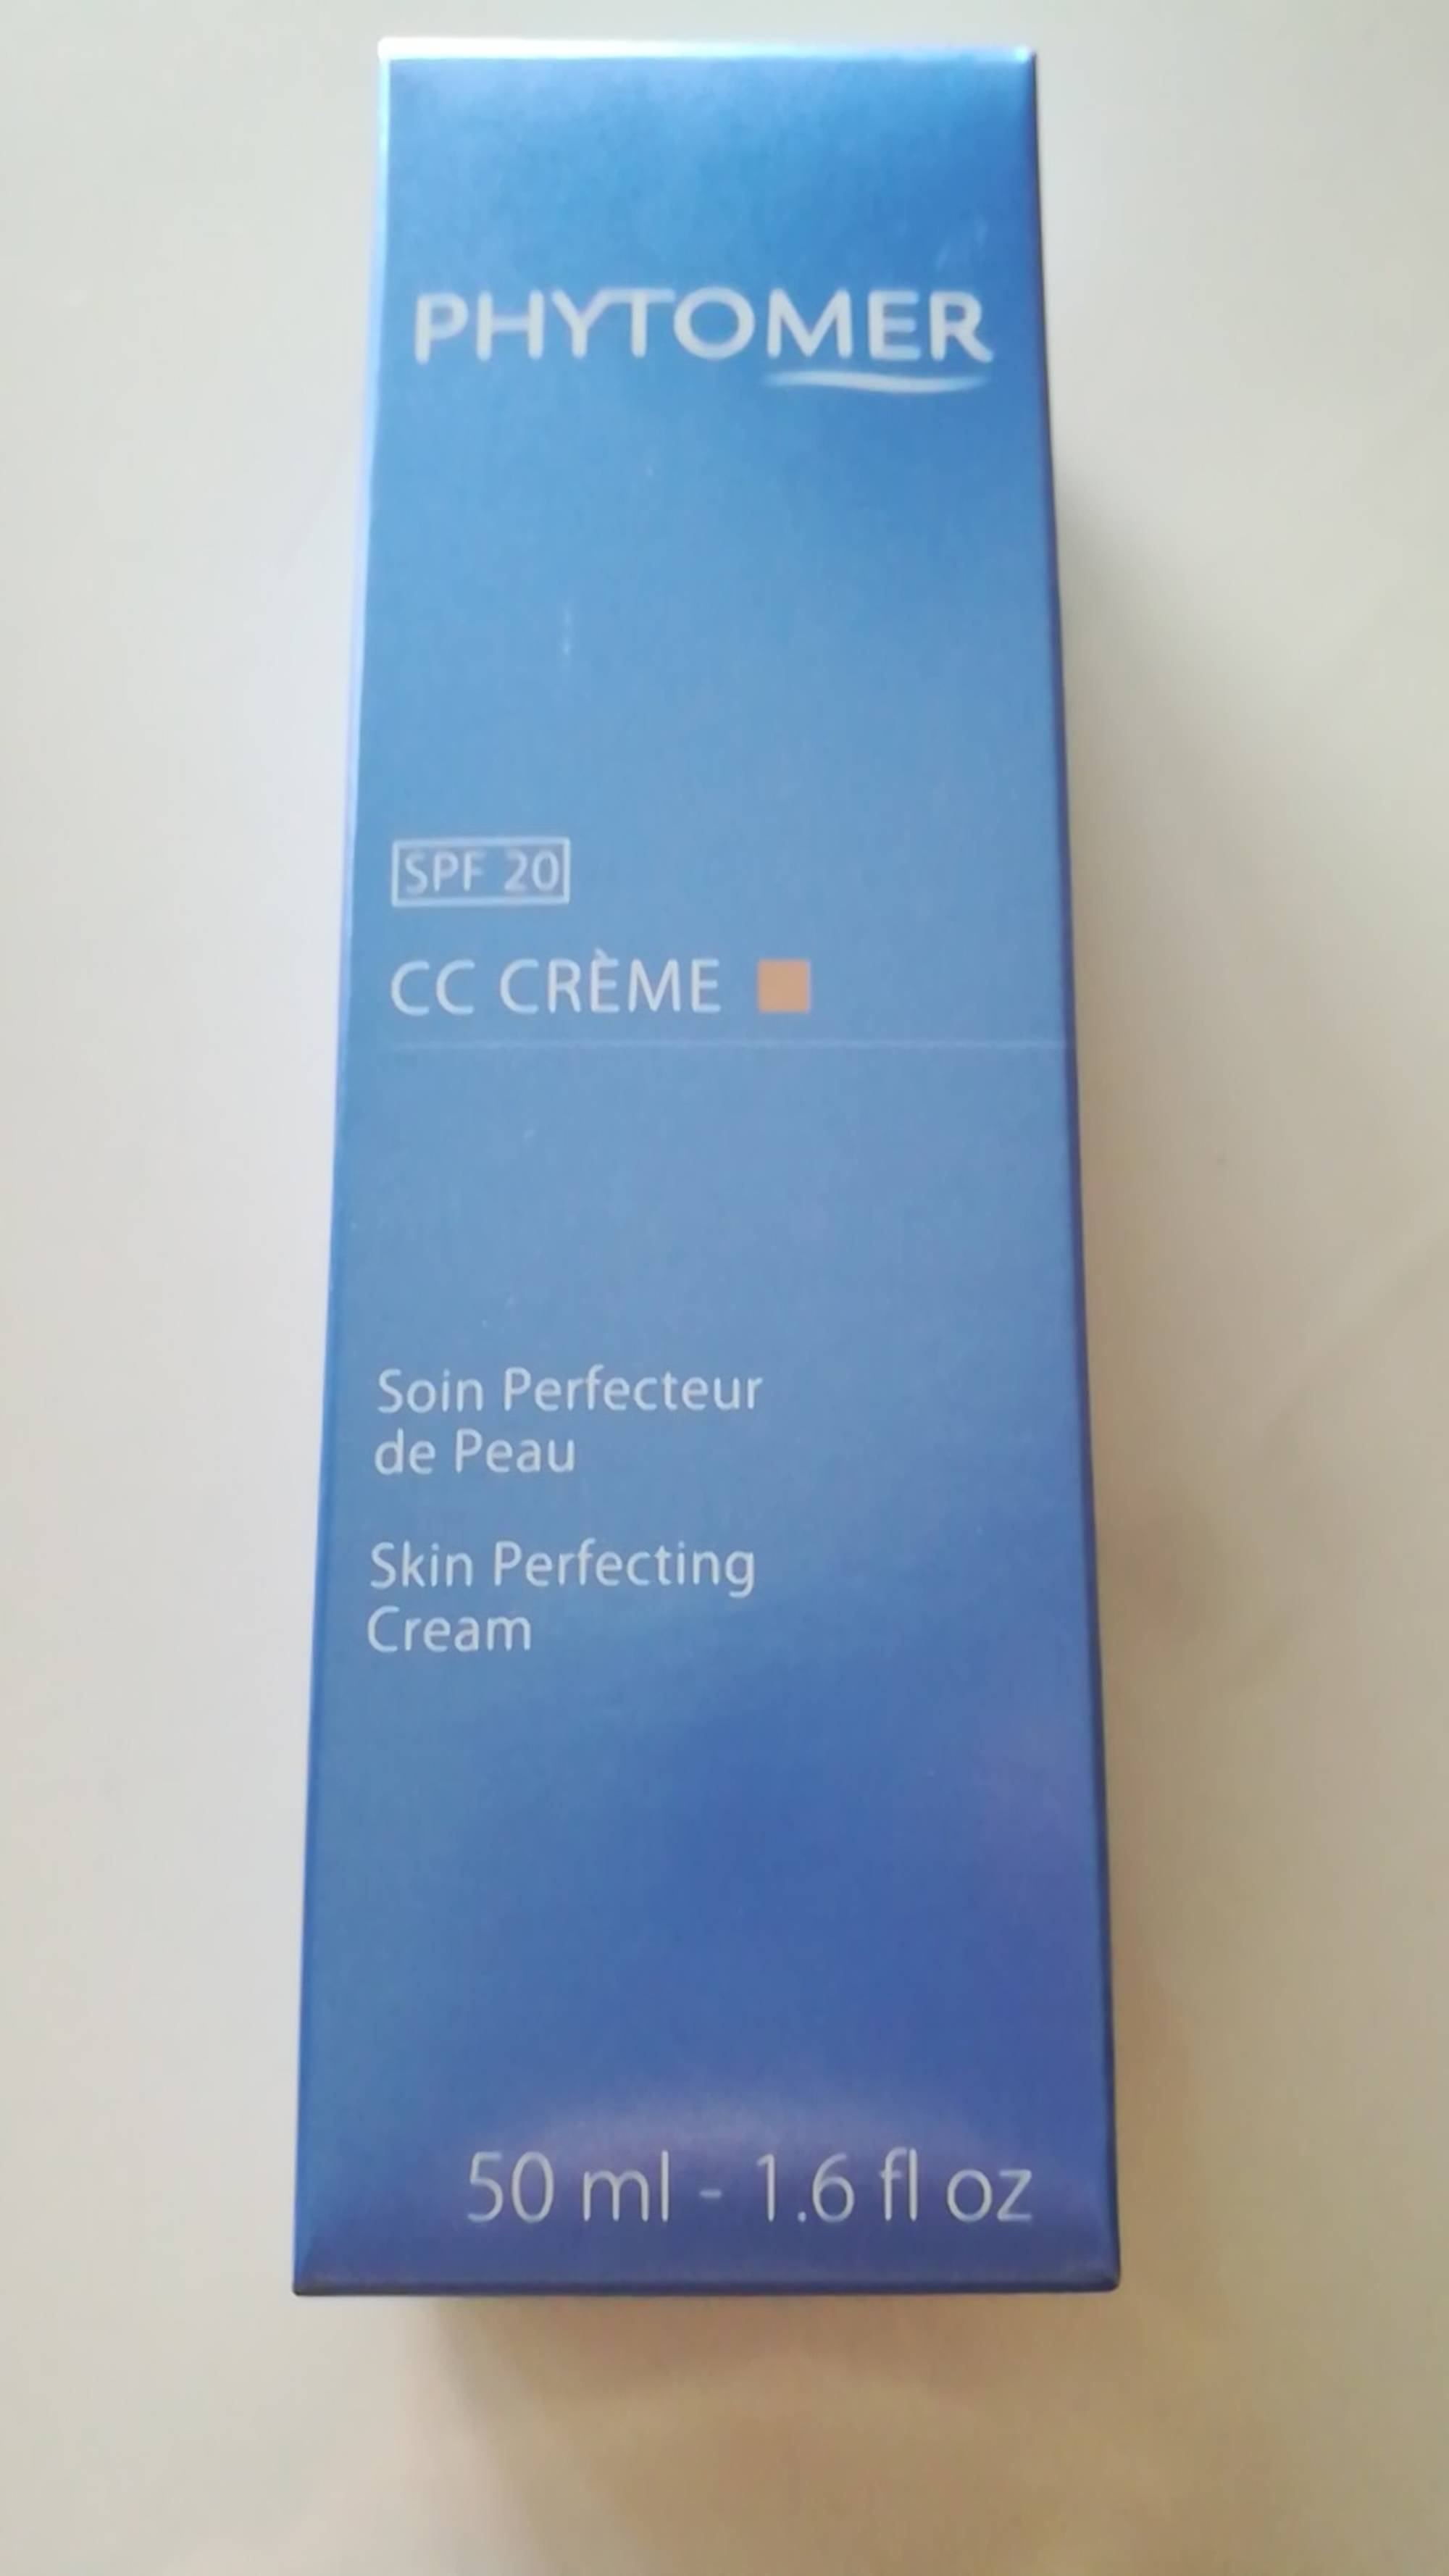 PHYTOMER - Soin perfecteur de peau SPF 20 - CC crème